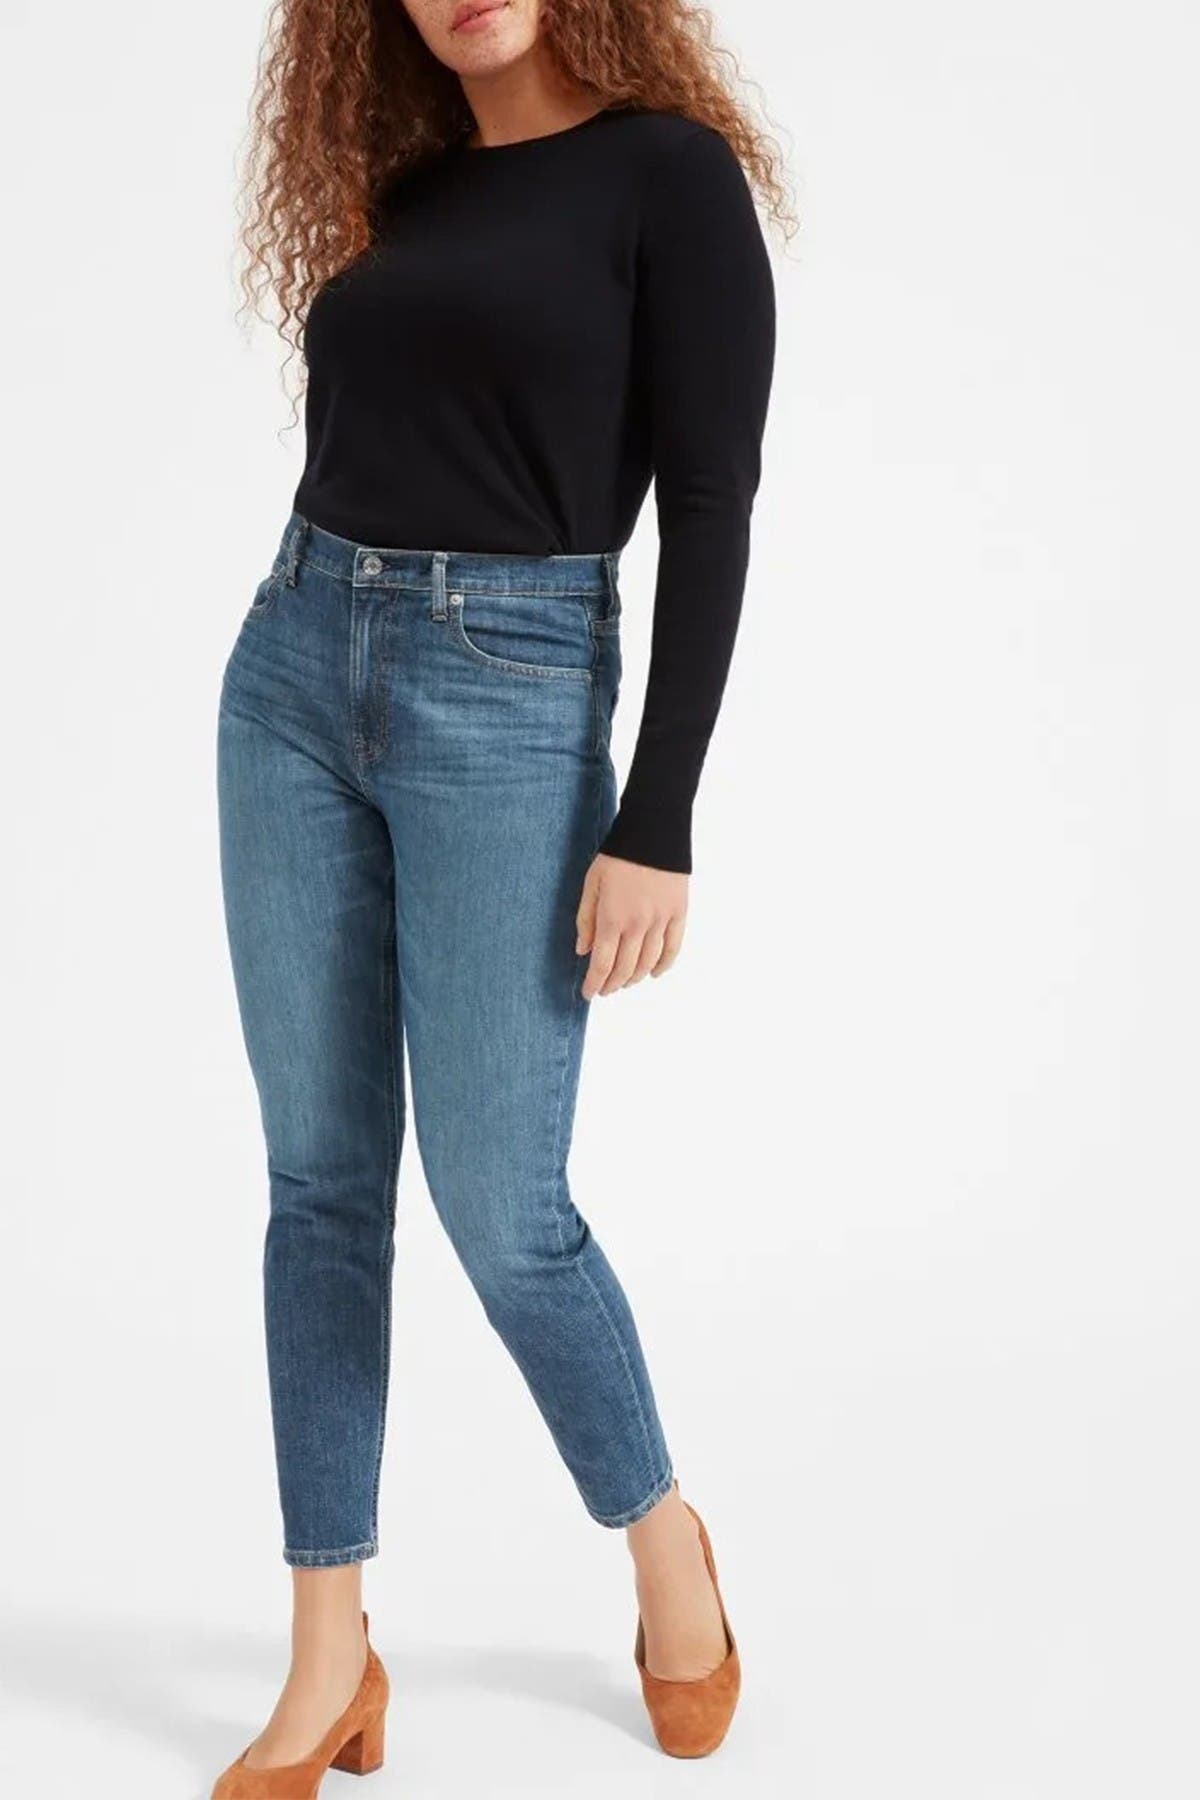 nordstrom rack skinny jeans